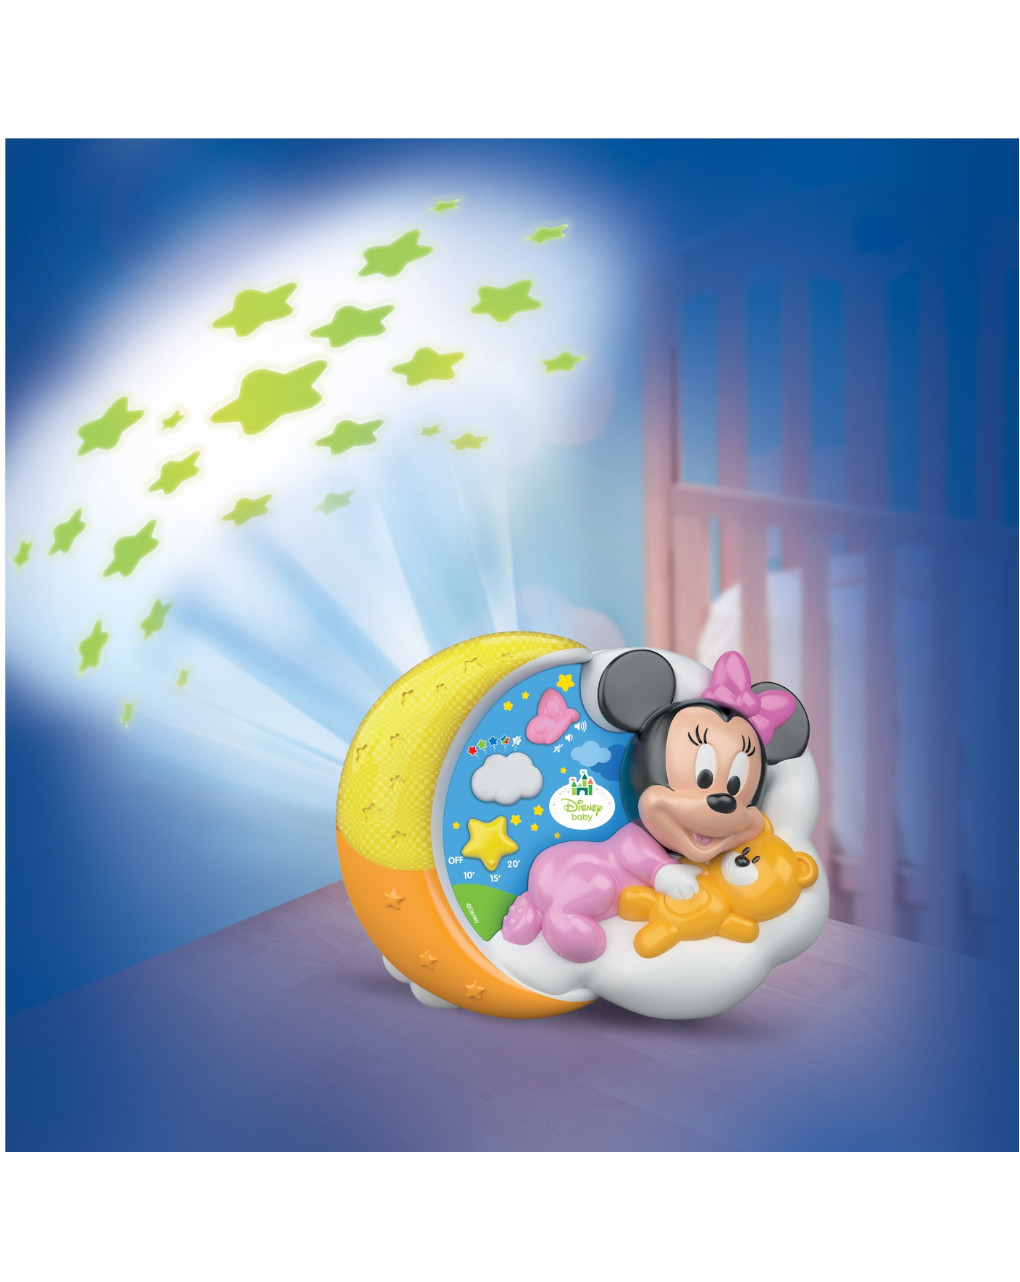 Disney baby - baby minnie proiettore magiche stelle - Clementoni